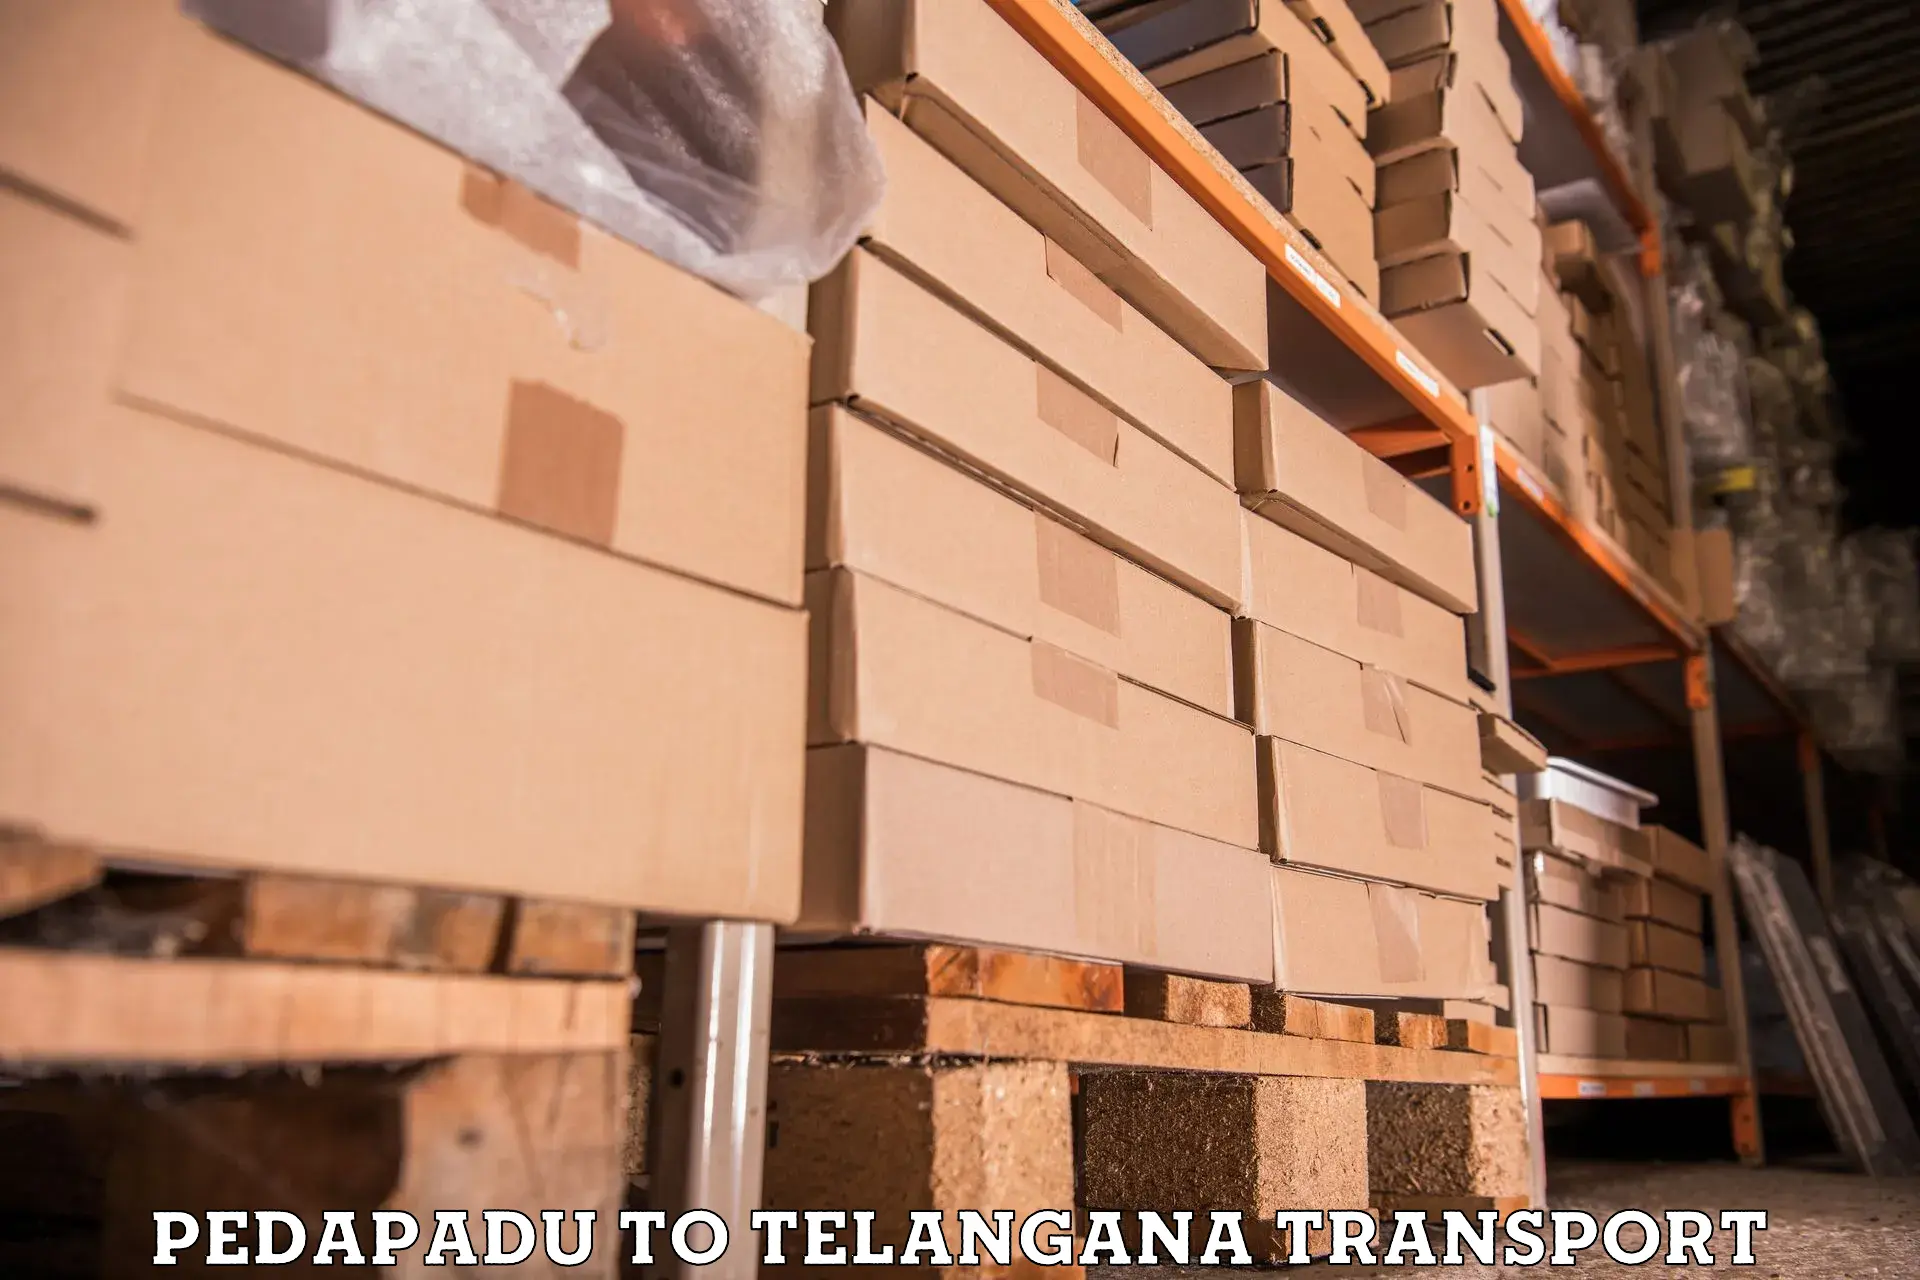 International cargo transportation services Pedapadu to Sikanderguda